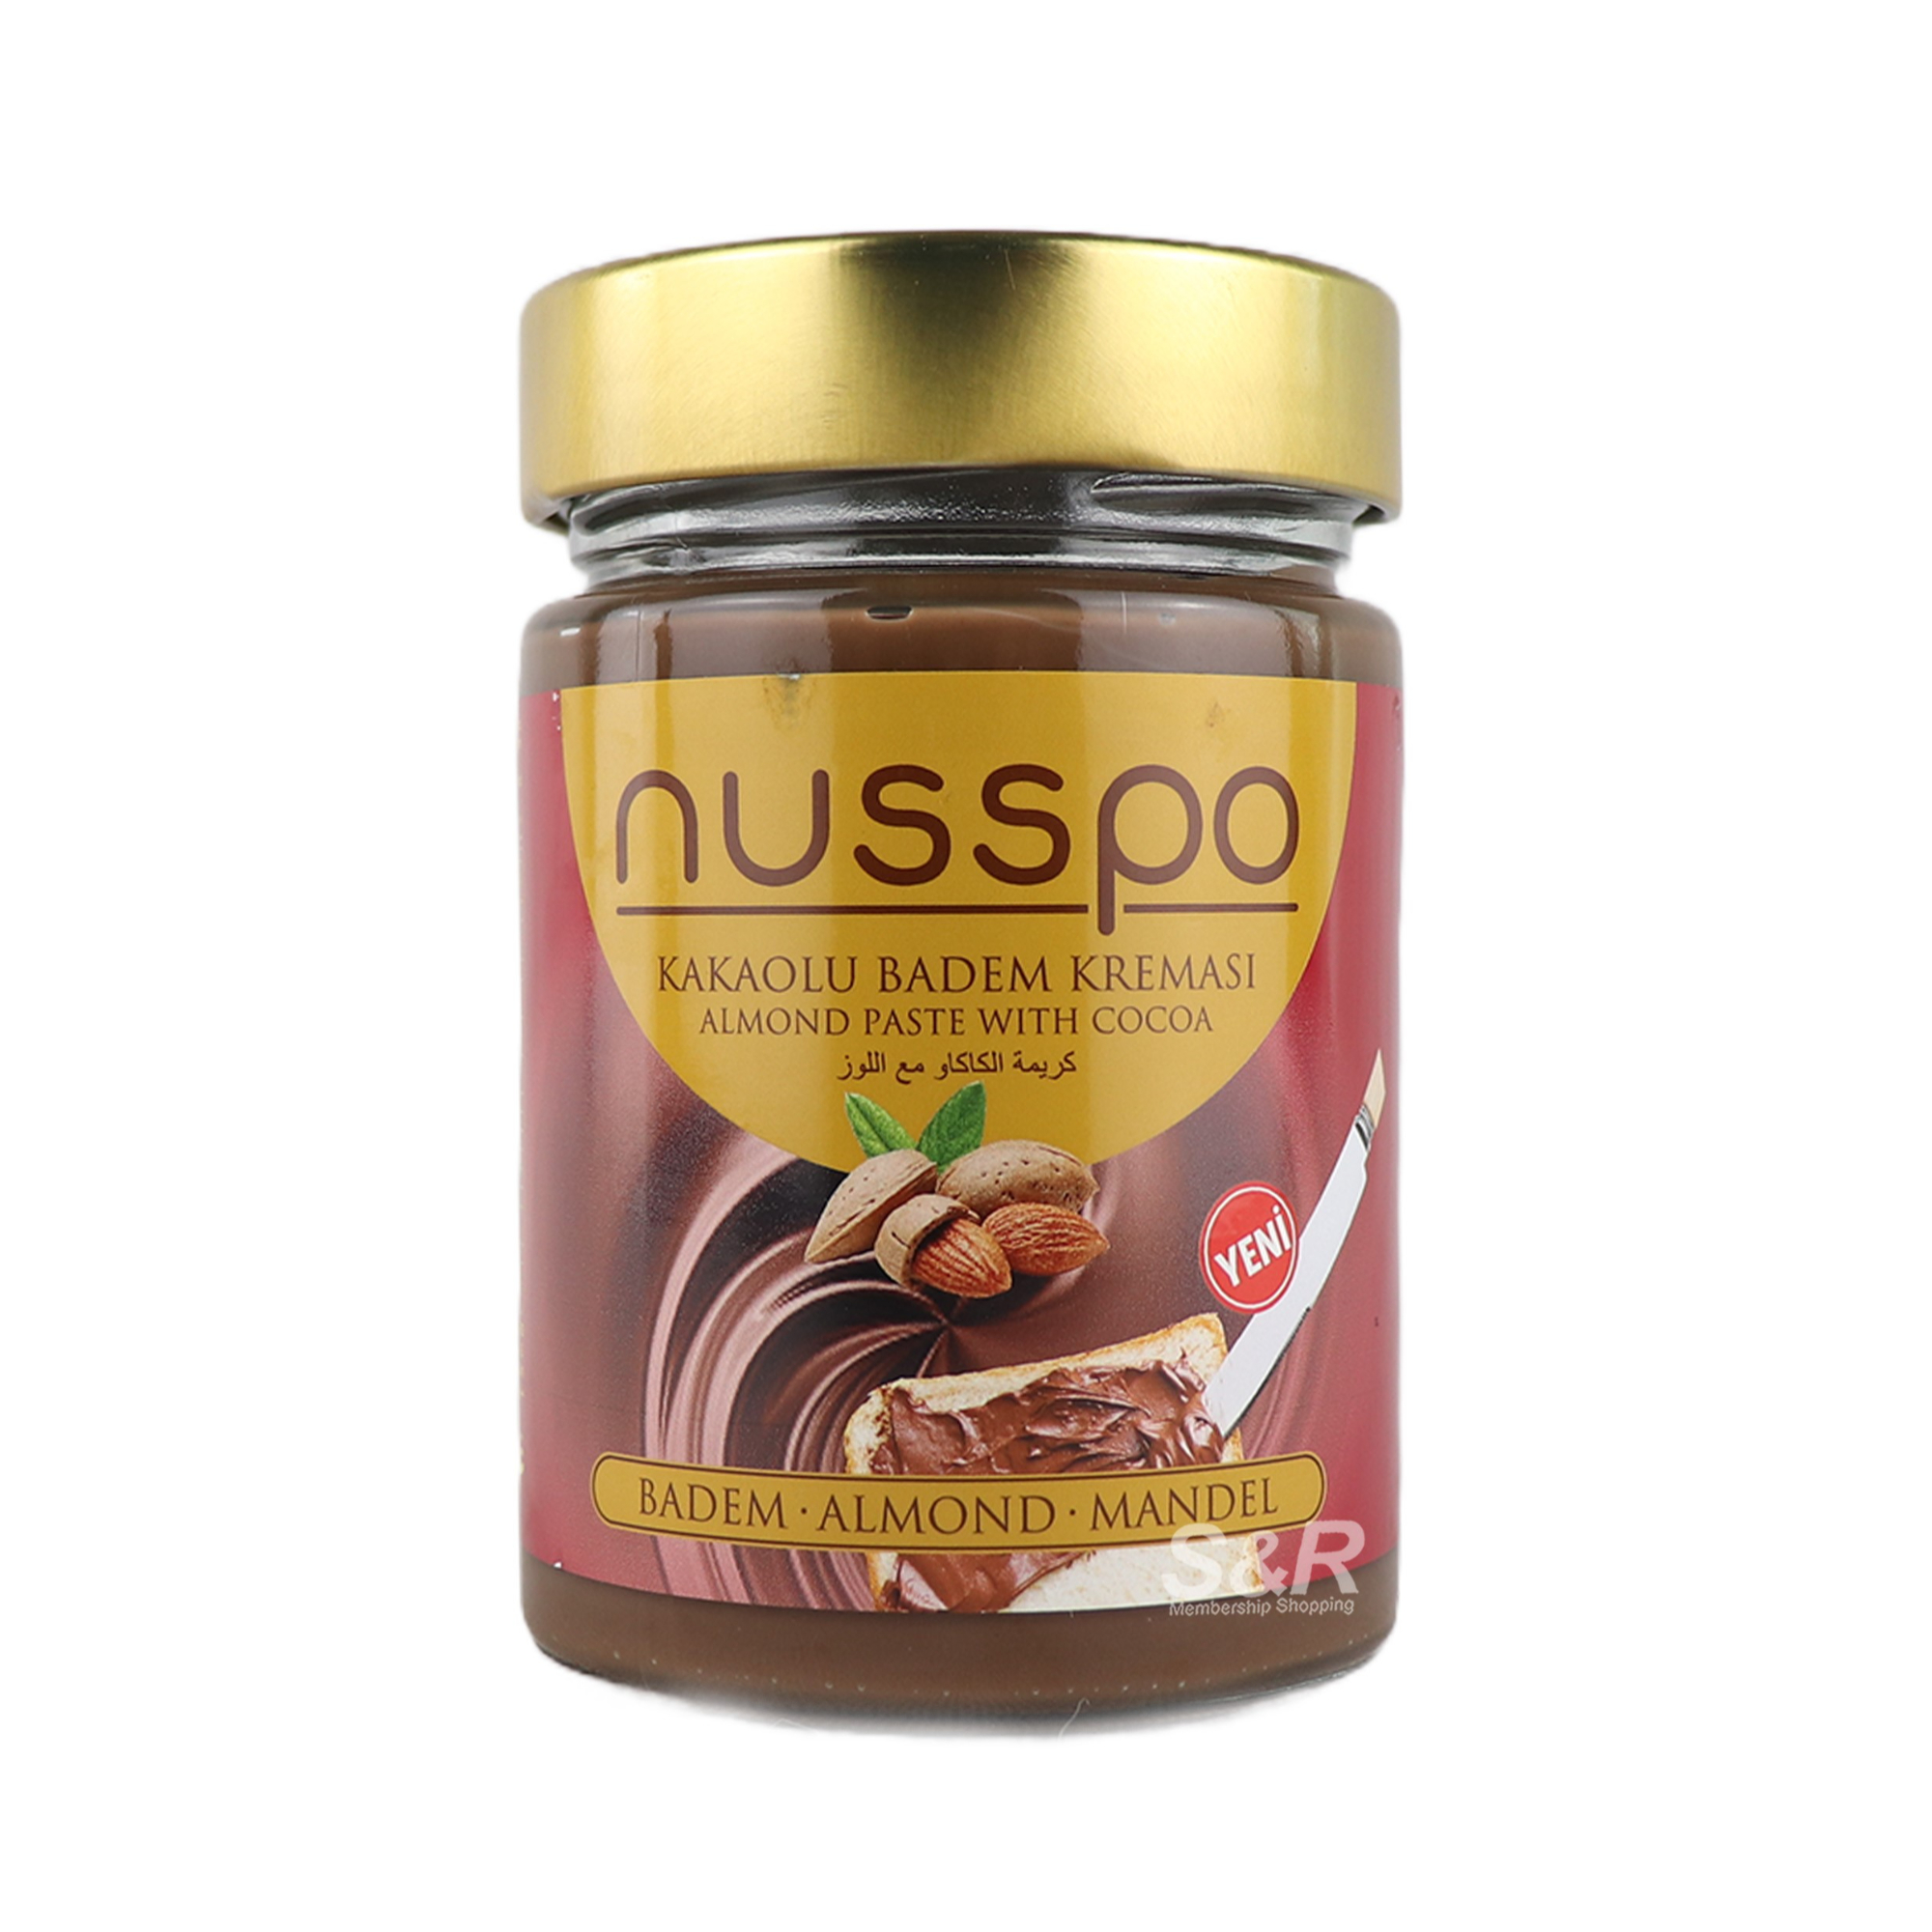 Nusspo Almond Paste With Cocoa Spread 350g